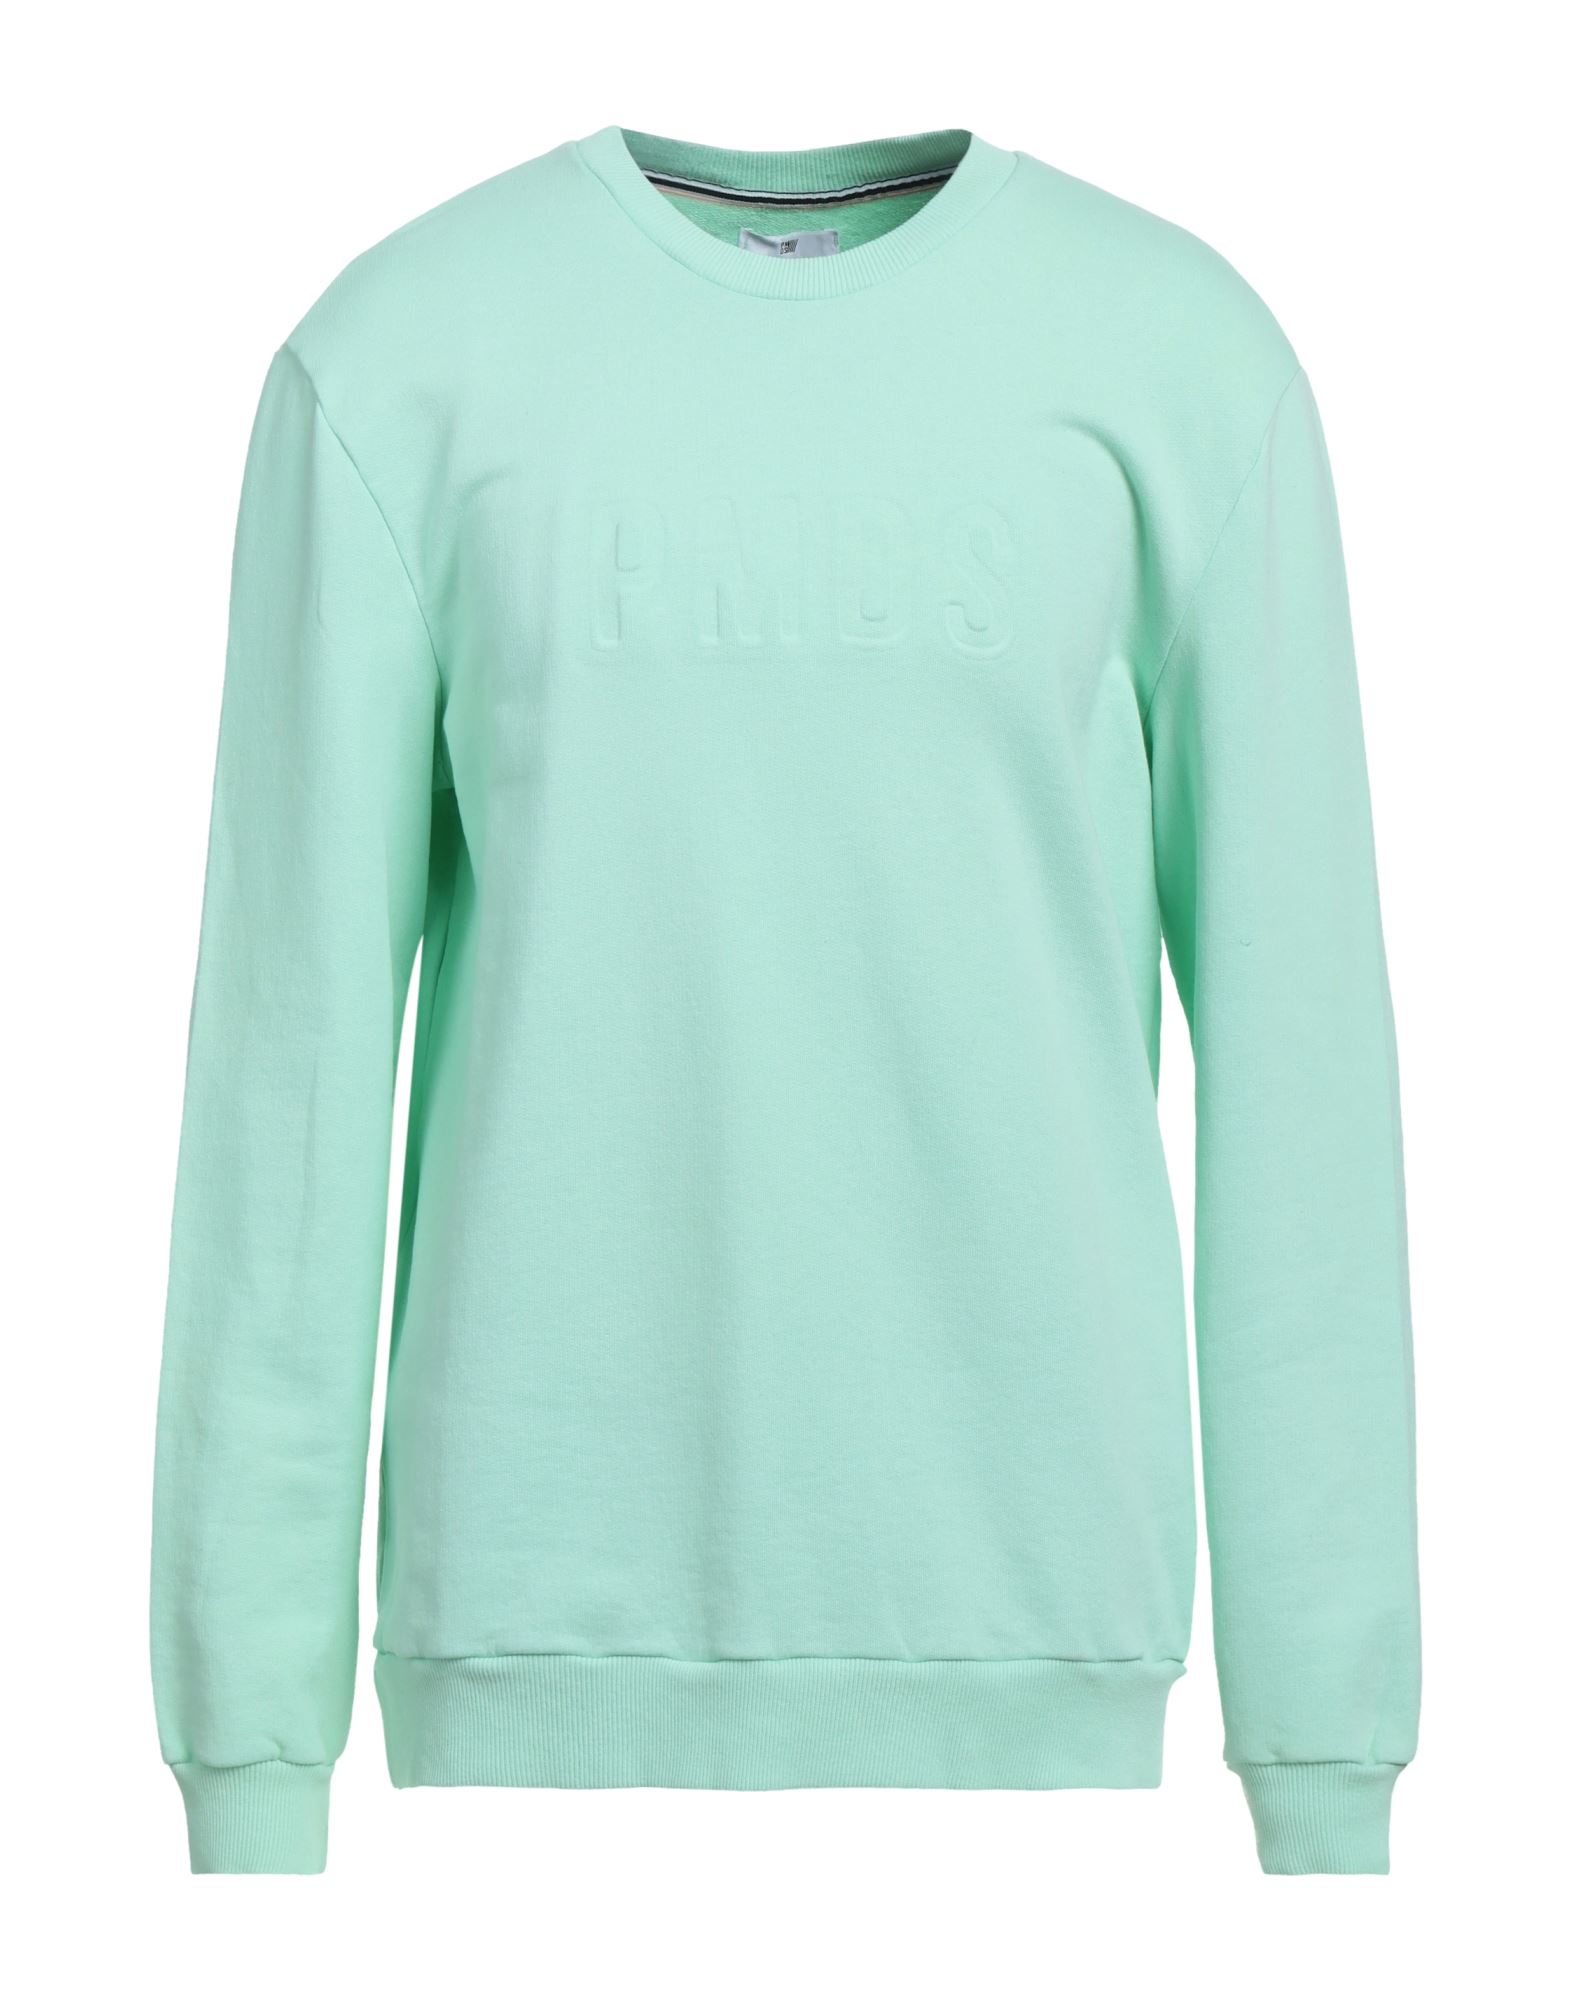 Shop Pmds Premium Mood Denim Superior Man Sweatshirt Light Green Size S Cotton